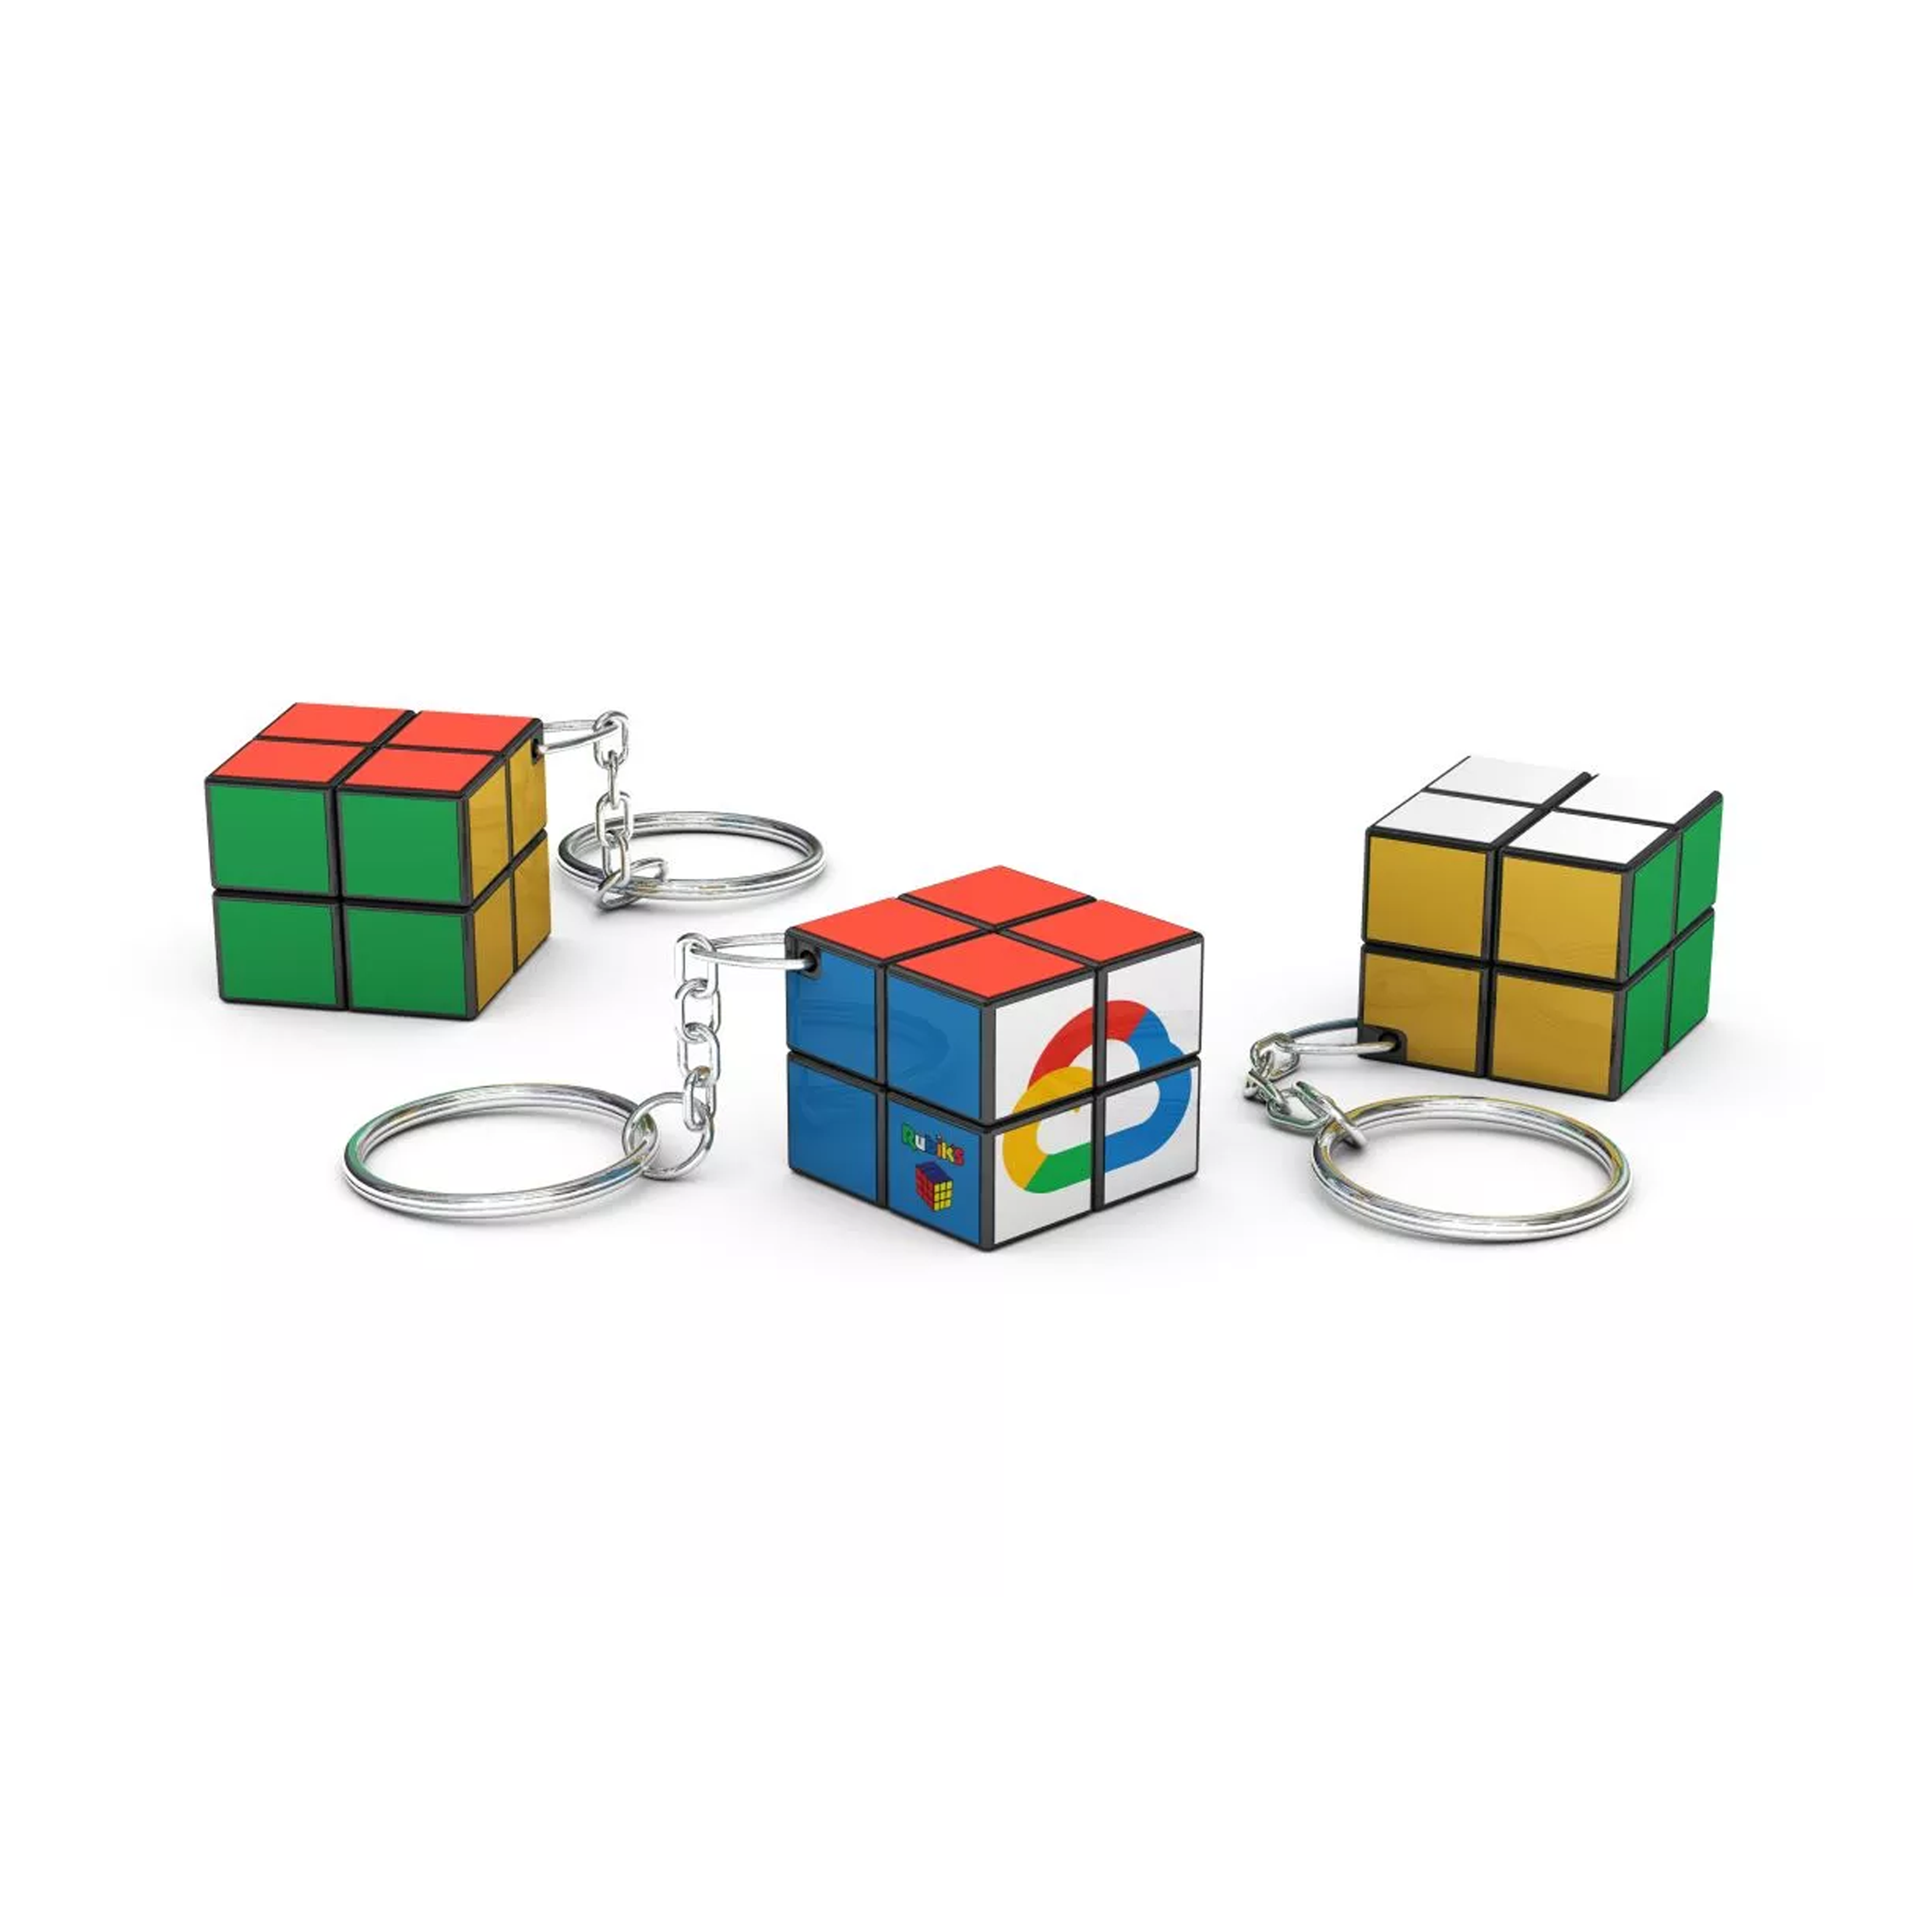 Porte-clés Rubik's Cube 2x2 (24mm) - Saint-Didier-sur-Doulon - Zaprinta France